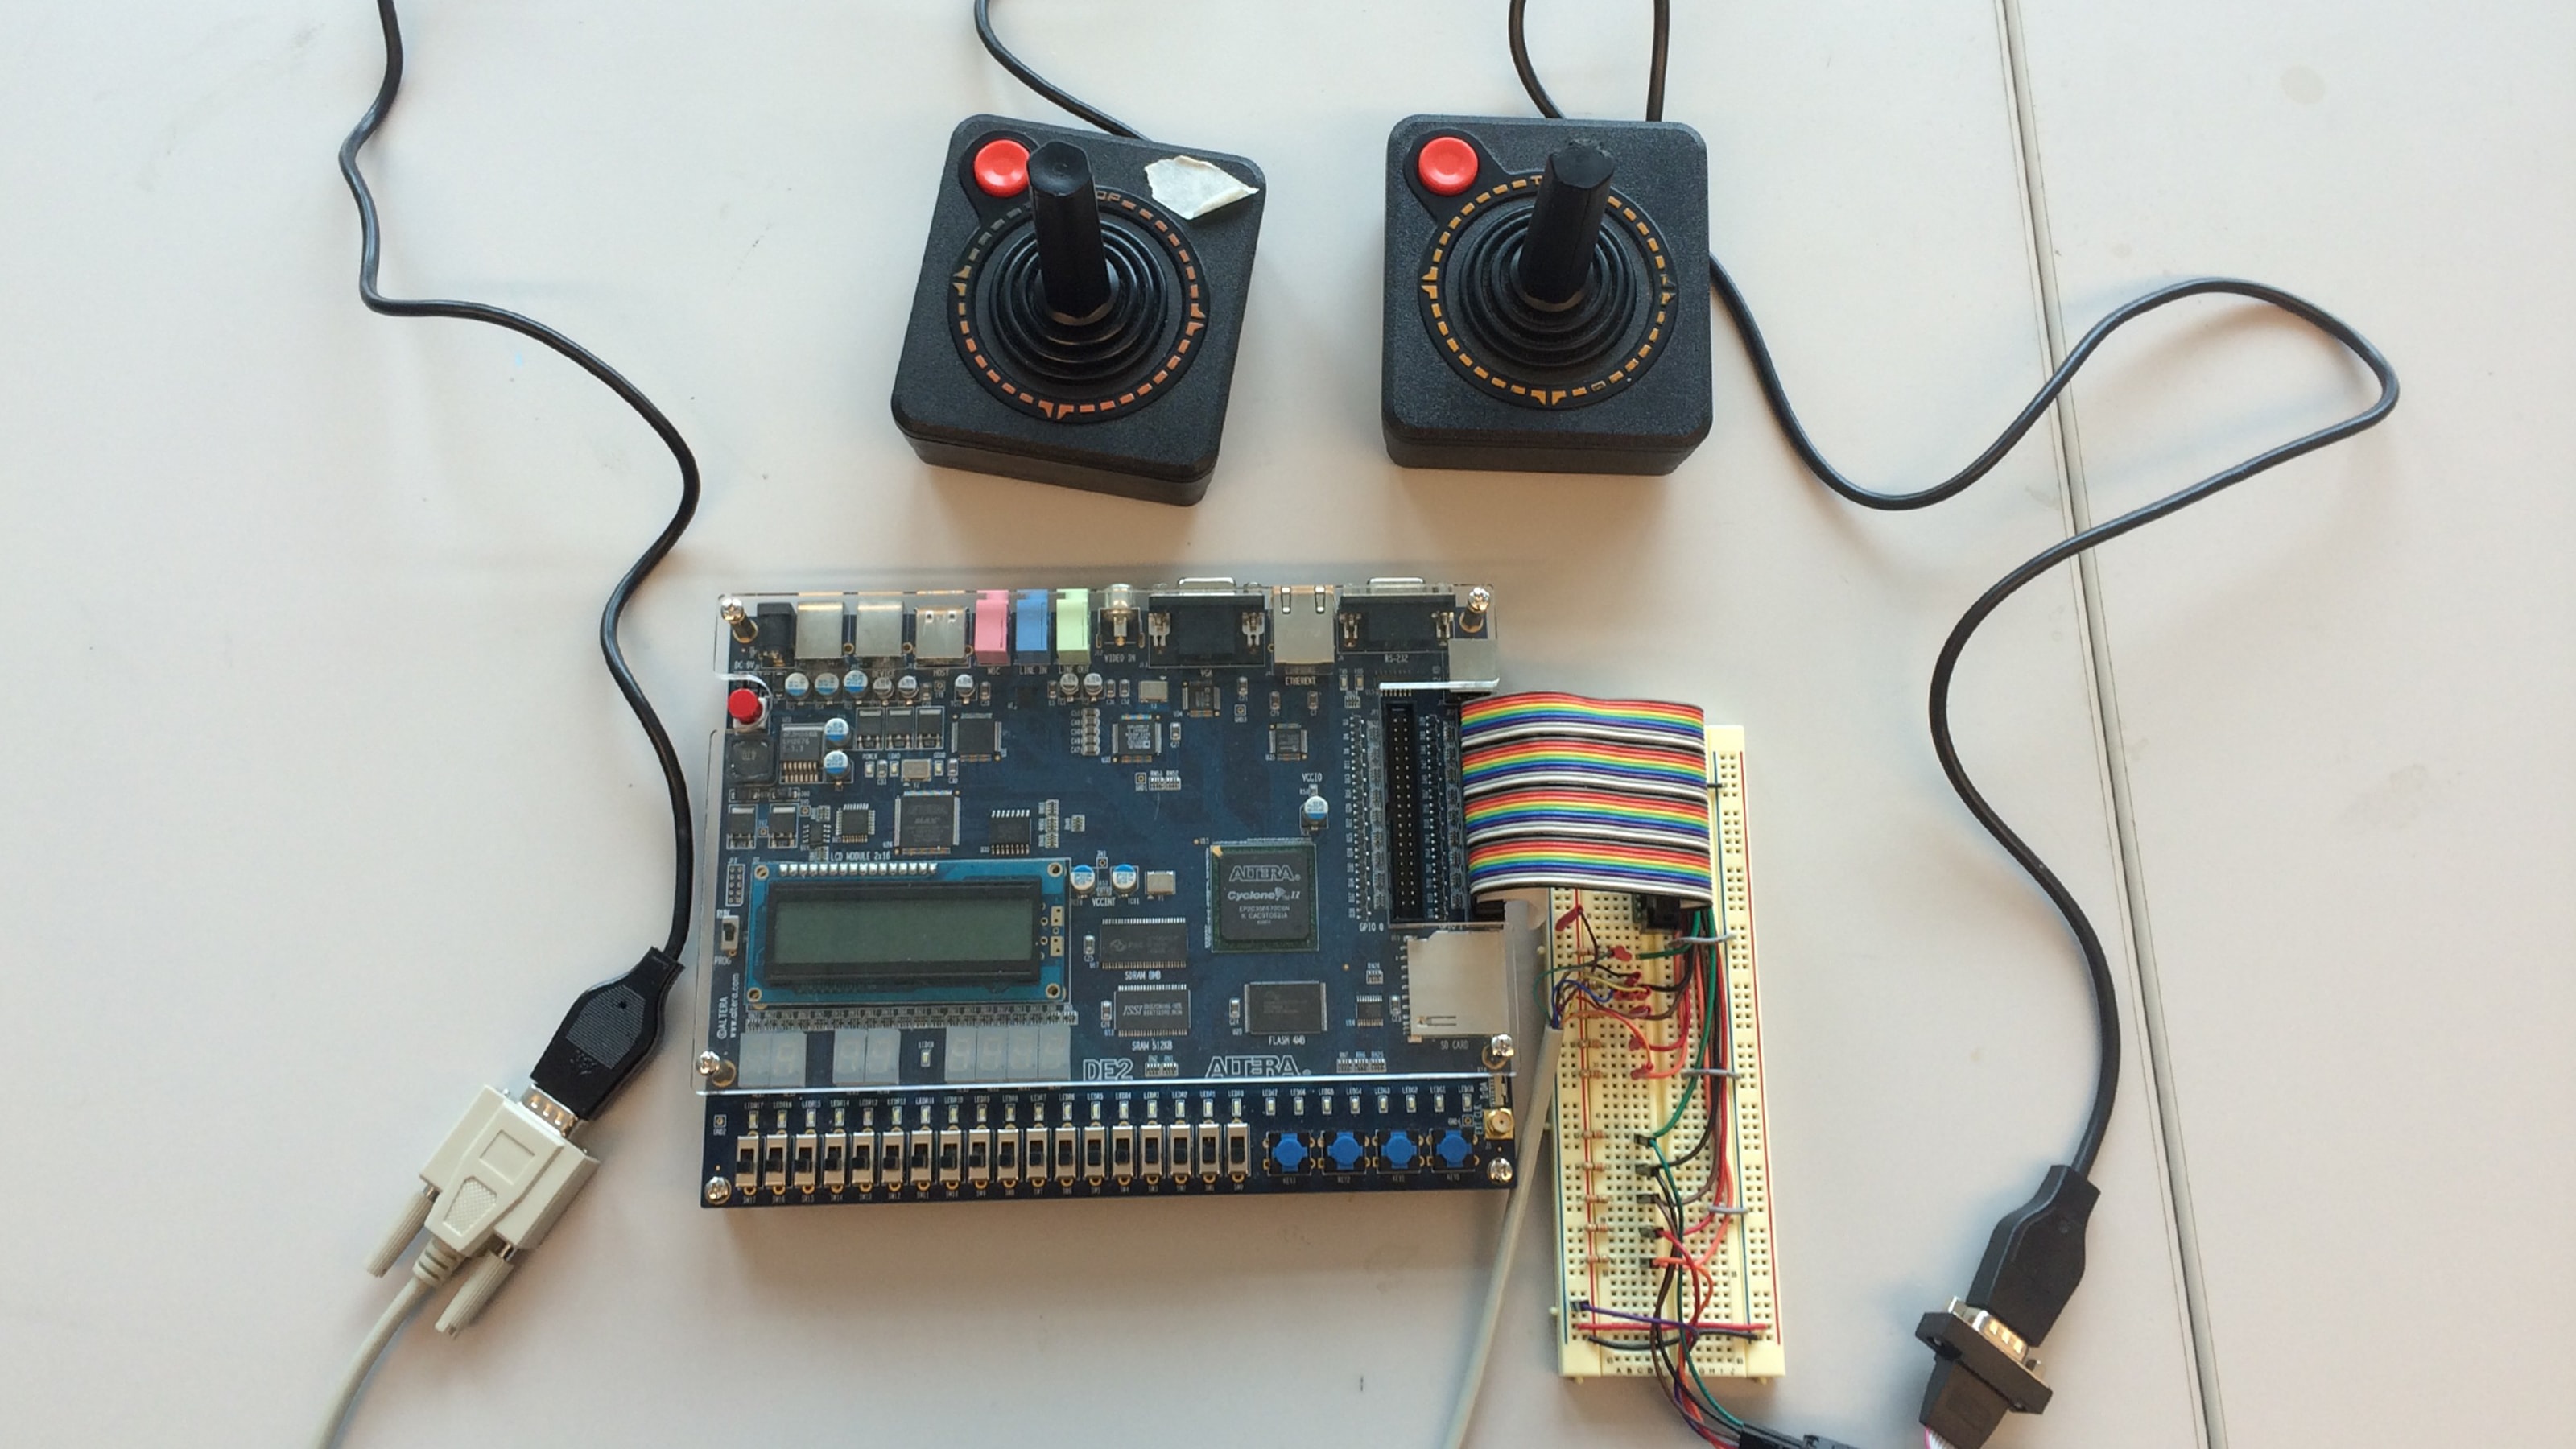 Two Atari joysticks connected to an Altera DE2 board.